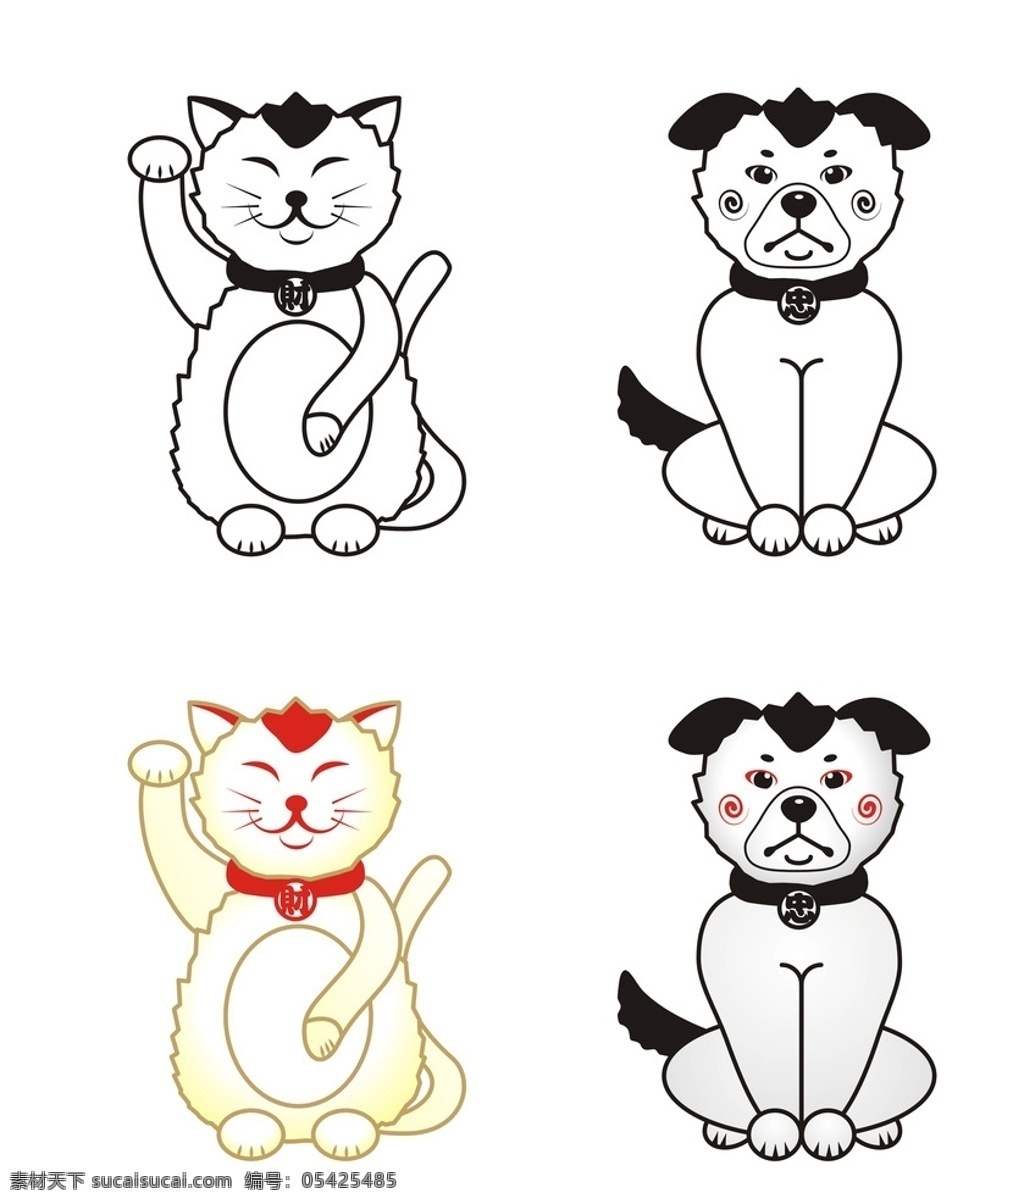 猫狗 猫 招财猫 白猫 卡通猫 狗 忠狗 白狗 卡通狗 矢量 动漫动画